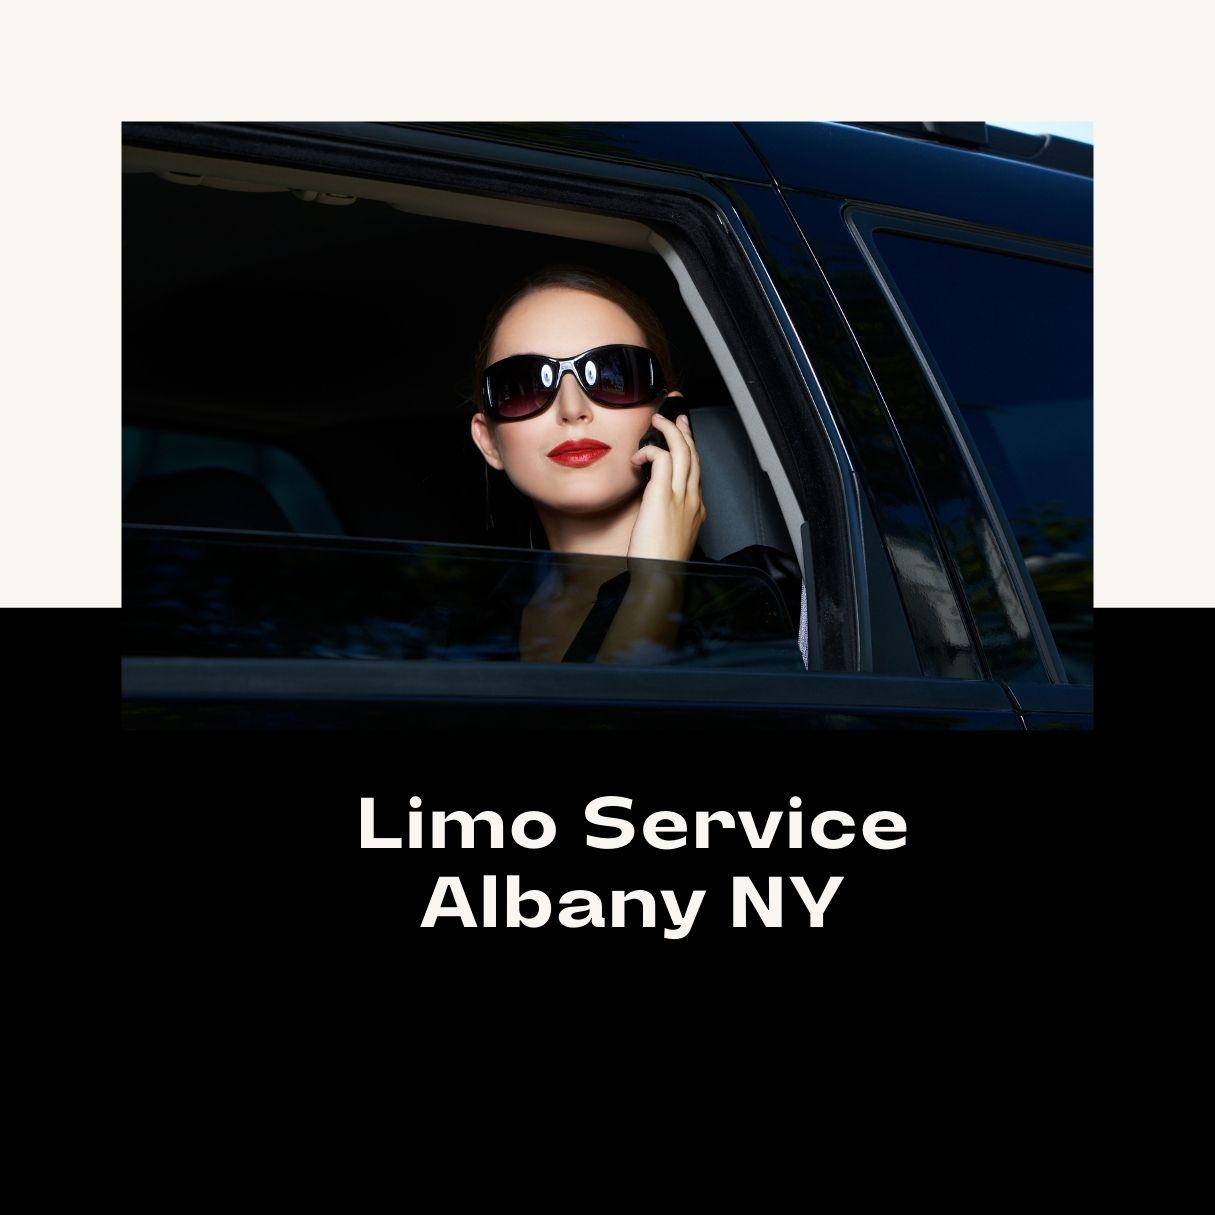 Premier Limo Service Albany NY